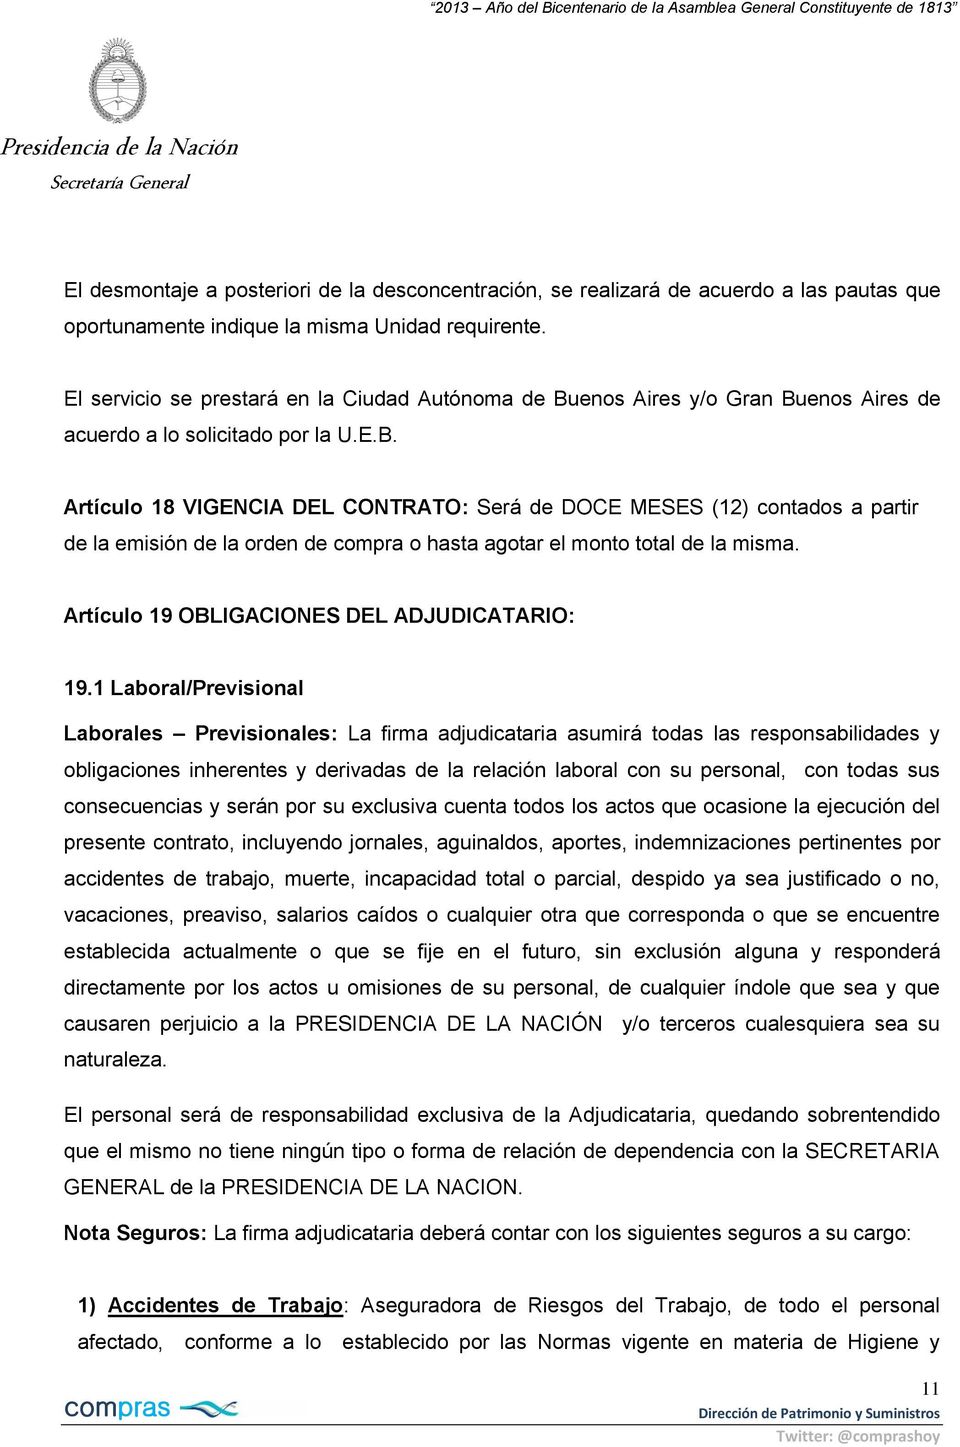 enos Aires y/o Gran Buenos Aires de acuerdo a lo solicitado por la U.E.B. Artículo 18 VIGENCIA DEL CONTRATO: Será de DOCE MESES (12) contados a partir de la emisión de la orden de compra o hasta agotar el monto total de la misma.